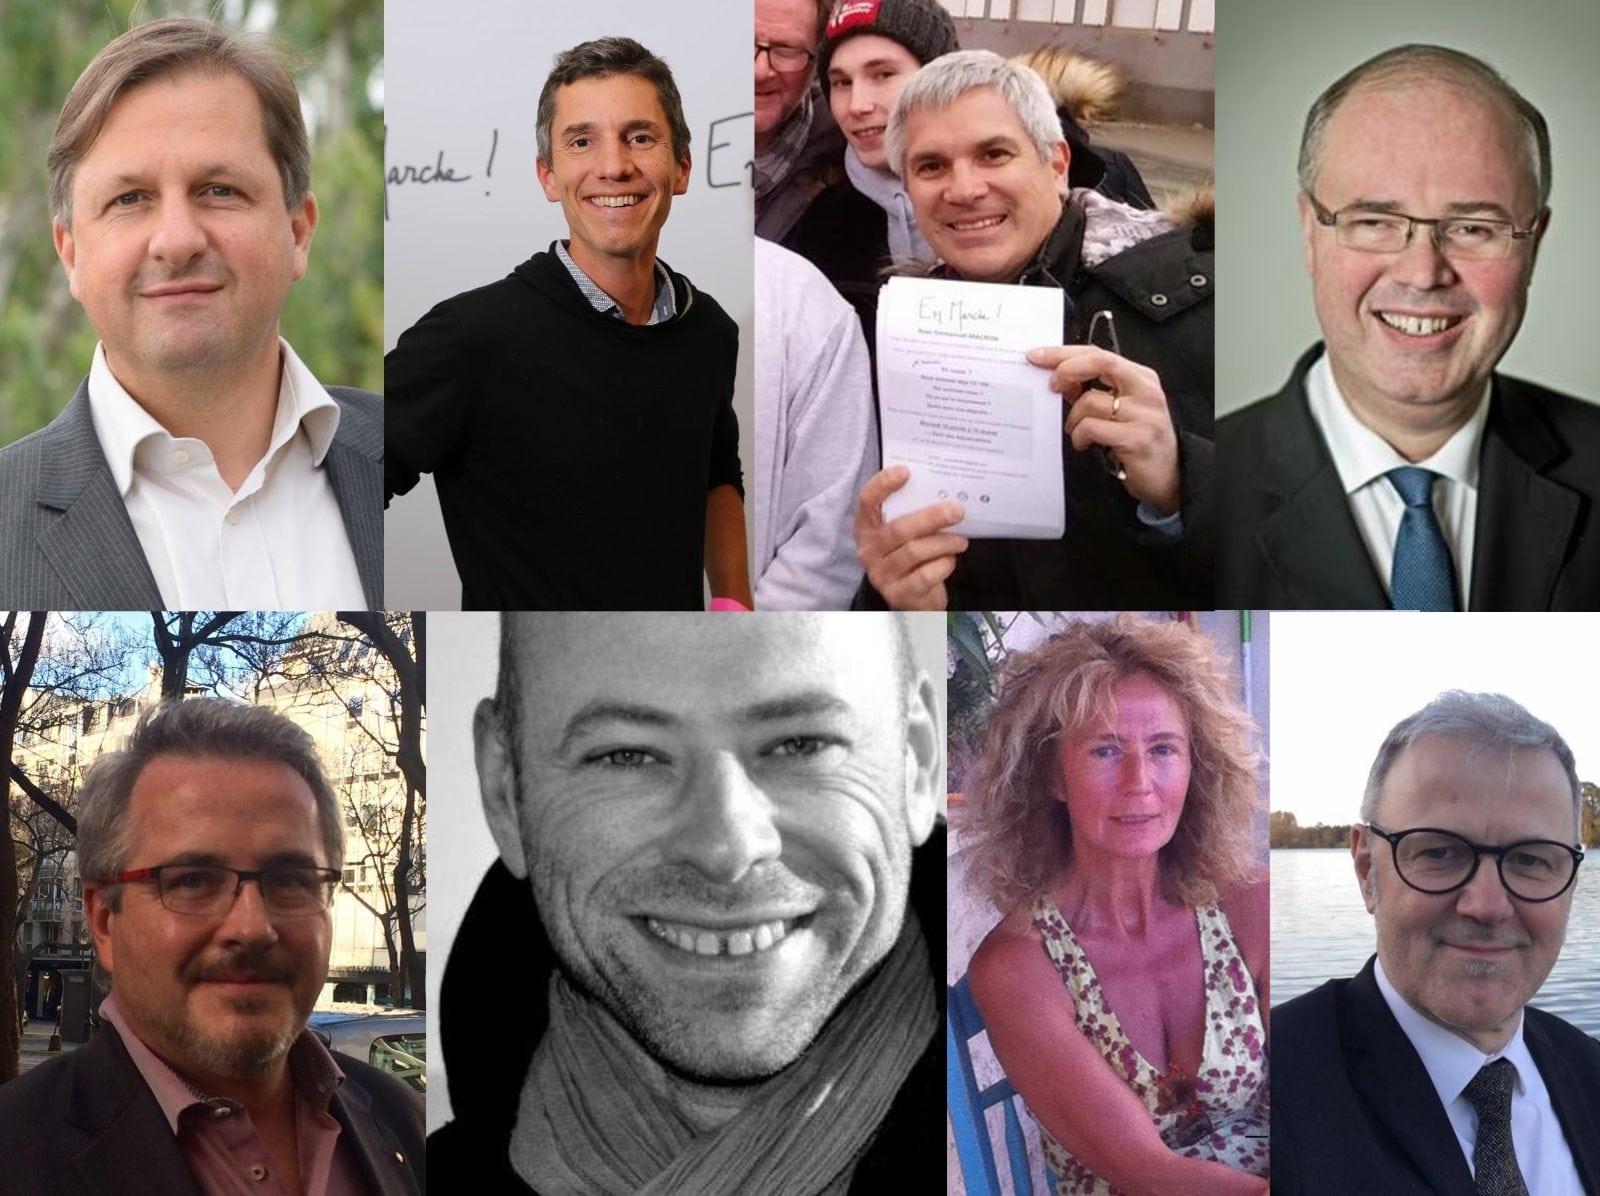 Des candidats de République en Marche en Alsace. De g. à d., en haut : Sylvain Weserman (67-2), Bruno Studer (67-3), Thierry Michels (67-1), Patrick Striby (68-2). En bas : Christian Gliech (67-8), Vincent Thiébaut (67-9), Martine Wonner (67-4), Guy Salomon (67-6). (Photos Facebook)